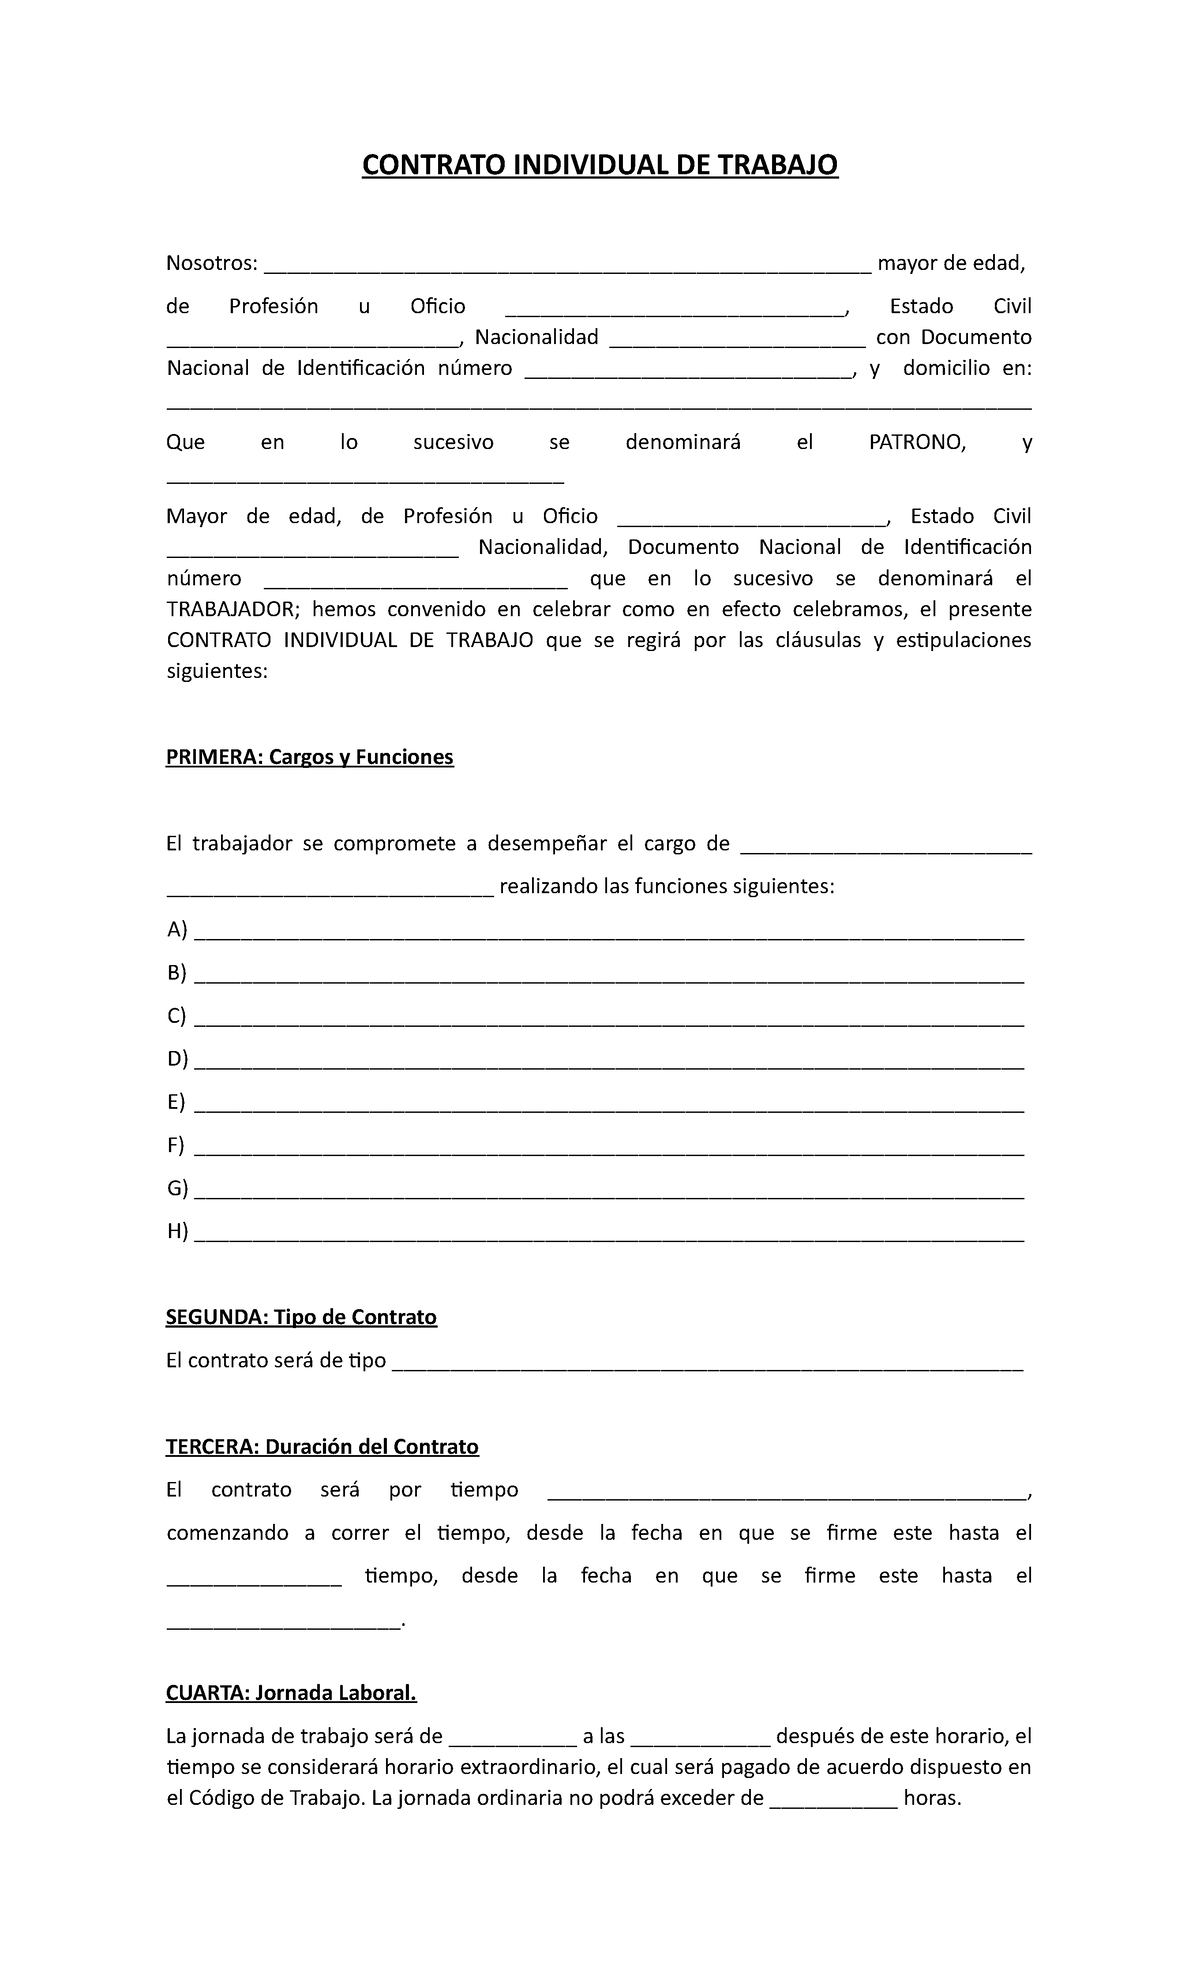 Formato Contrato Individual de Trabajo - CONTRATO INDIVIDUAL DE TRABAJO ...